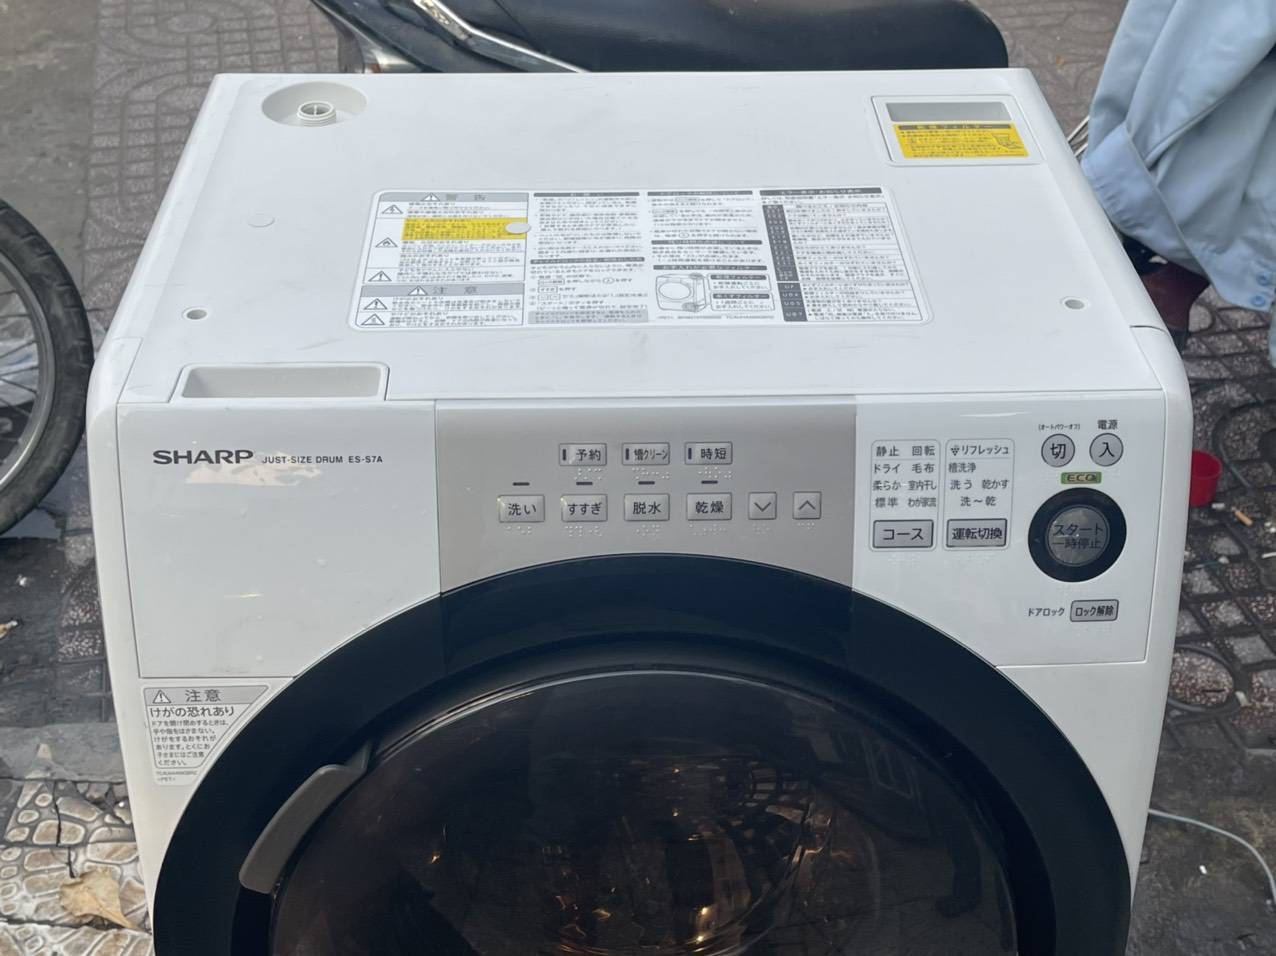 Tìm máy giặt sharp hàng chính hãng giá tốt nhất, tiết kiệm điện năng